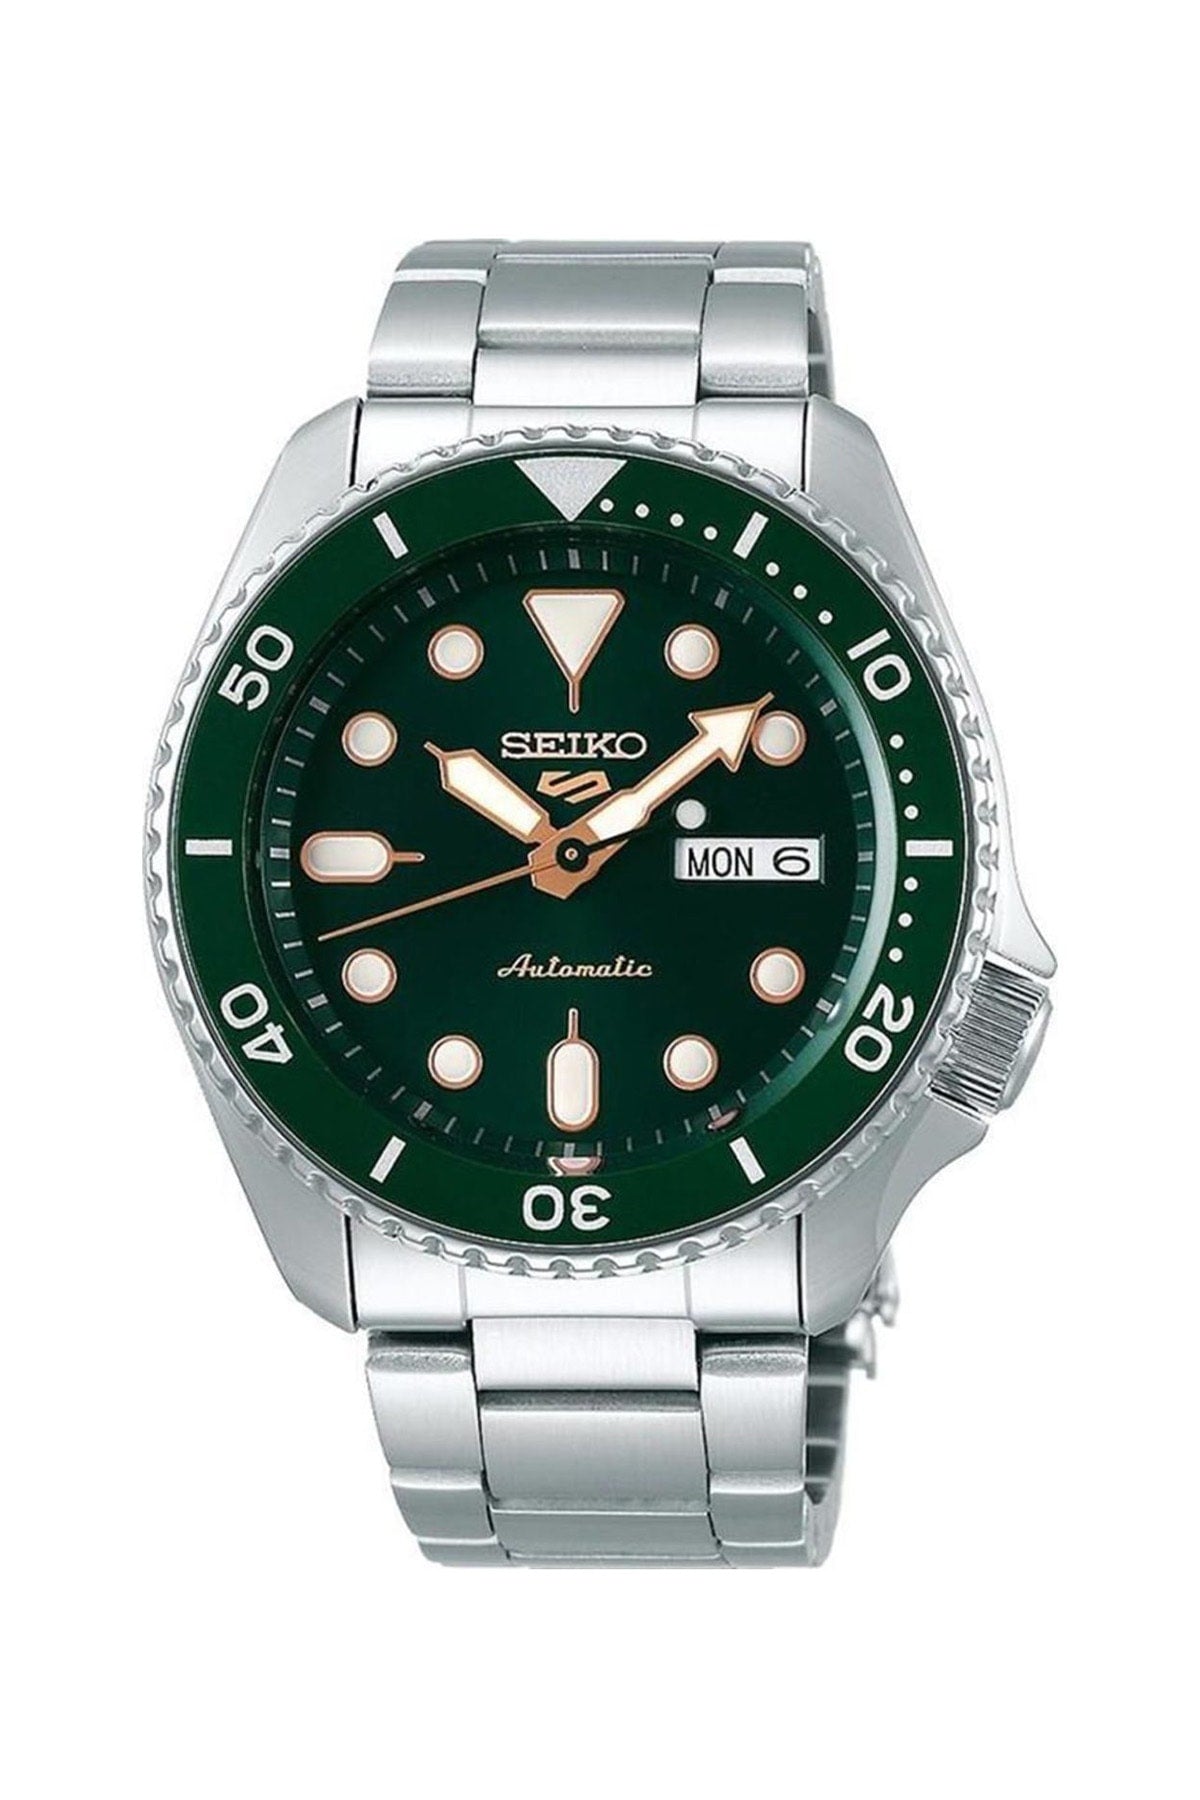 Seiko SRPD63K Male Wristwatch Classic Stylish Model Europe America Fashion Watches